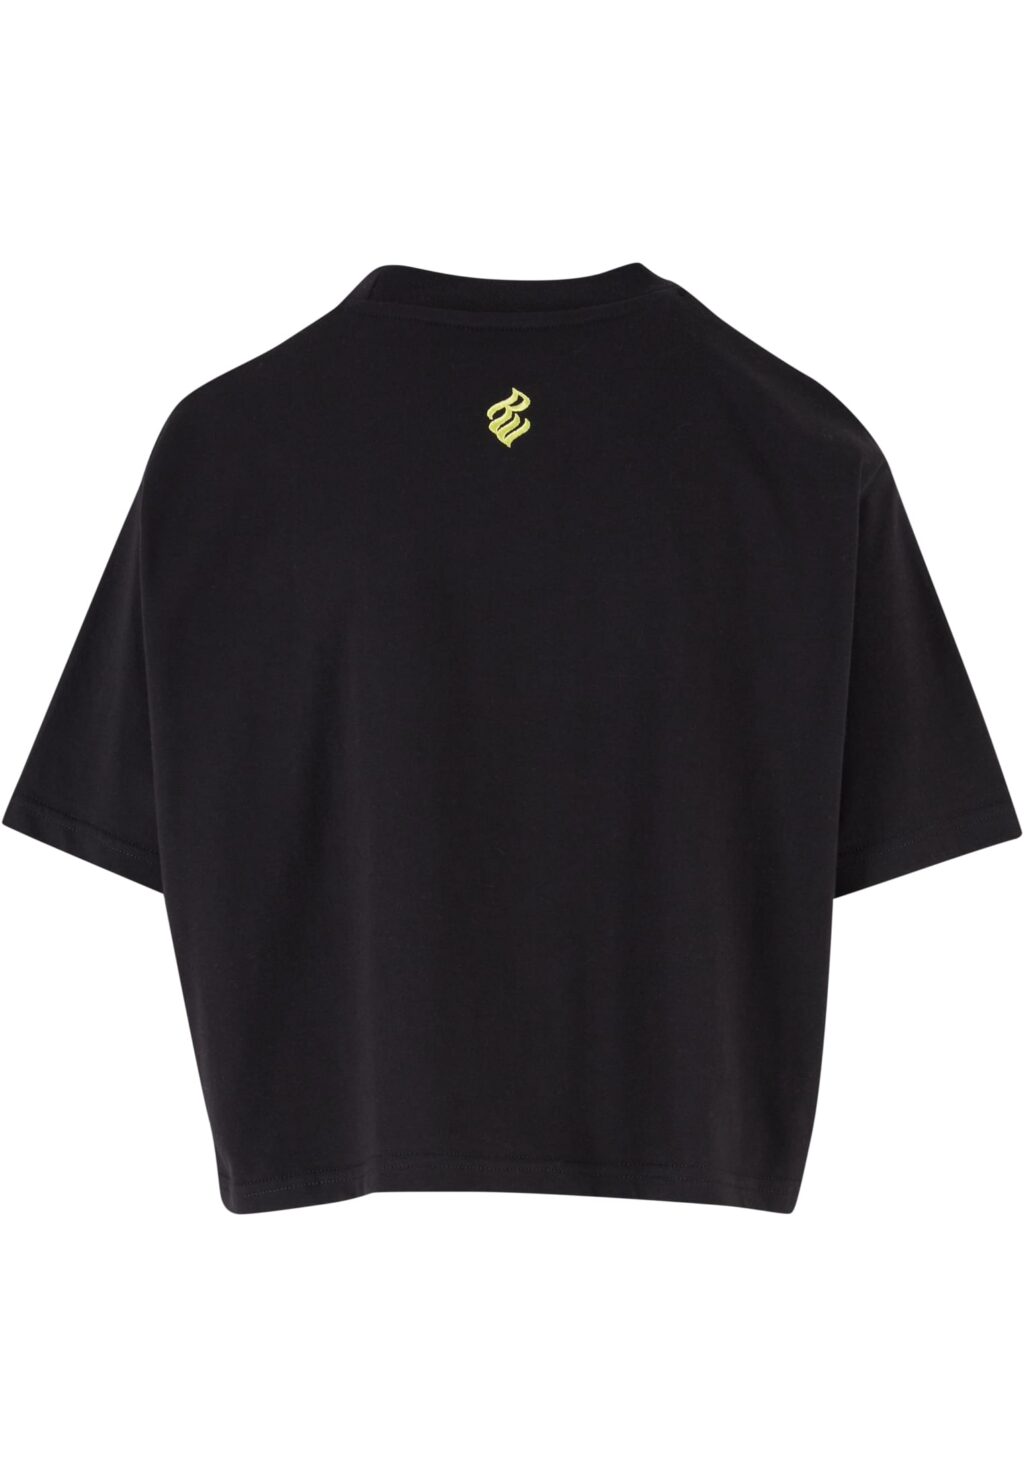 Rocawear Tshirt Backprint black RWLTS005